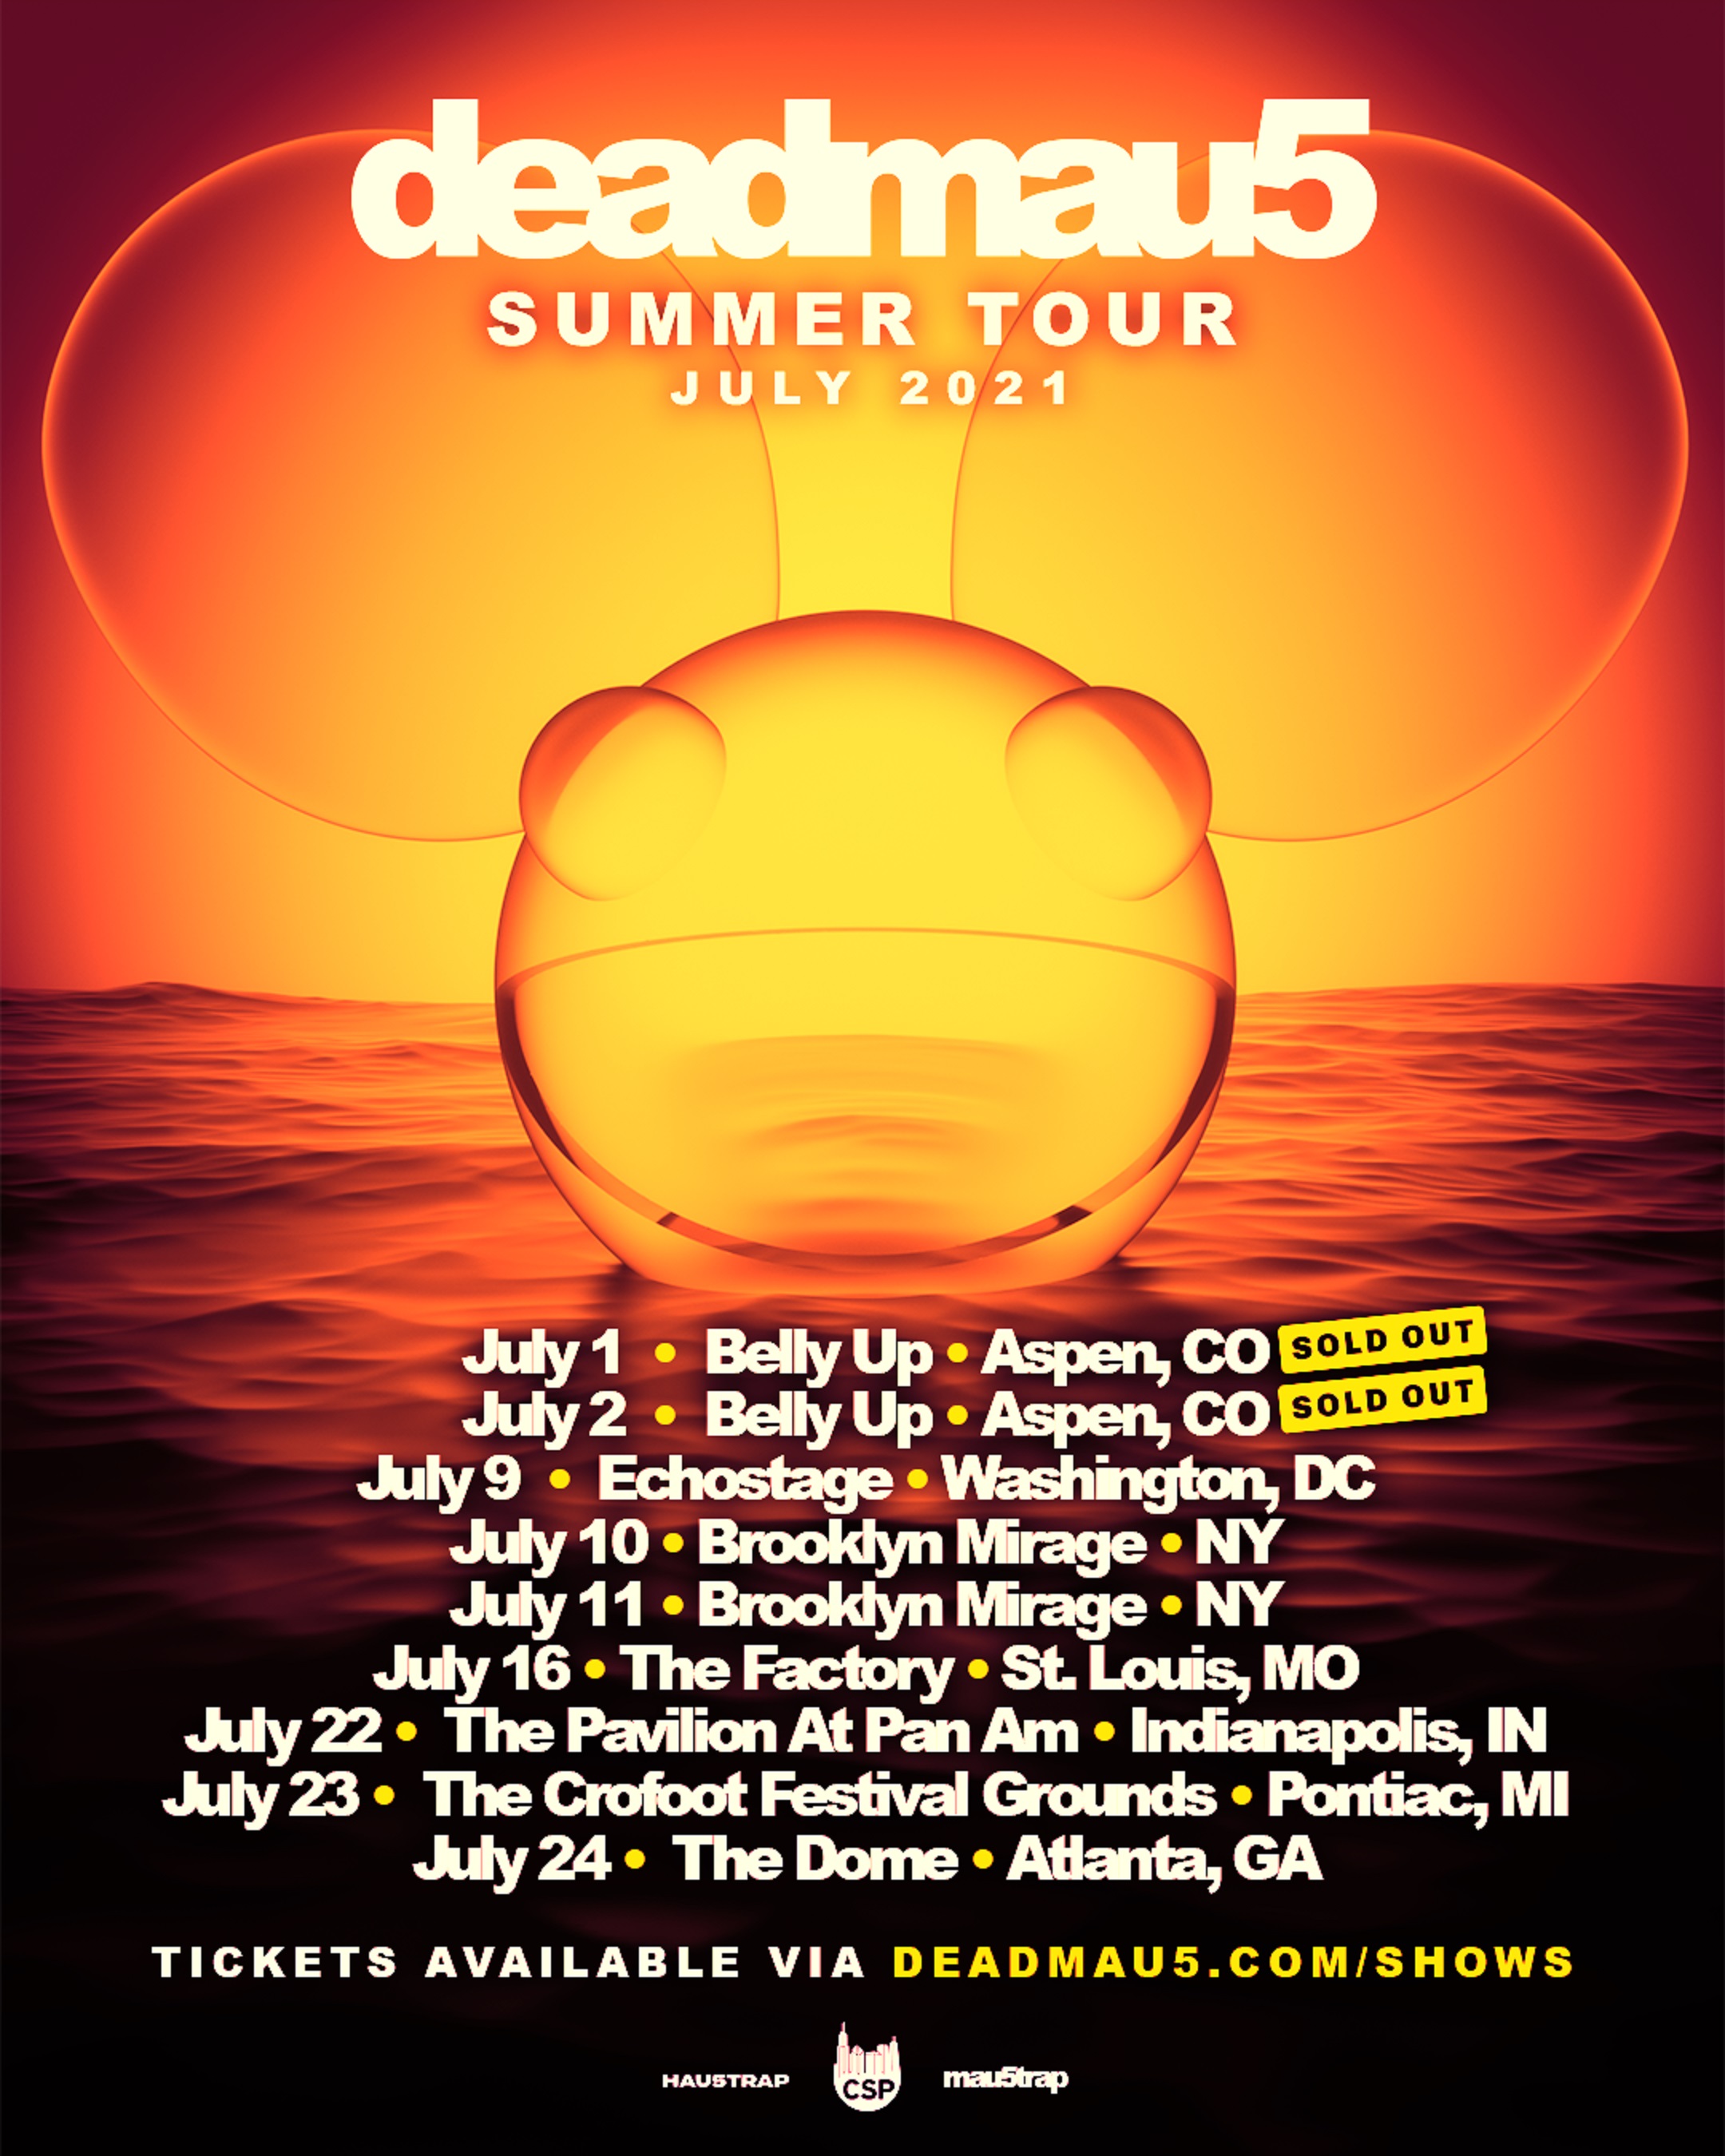 deadmau5 Announces Summer Tour Dates for July 2021